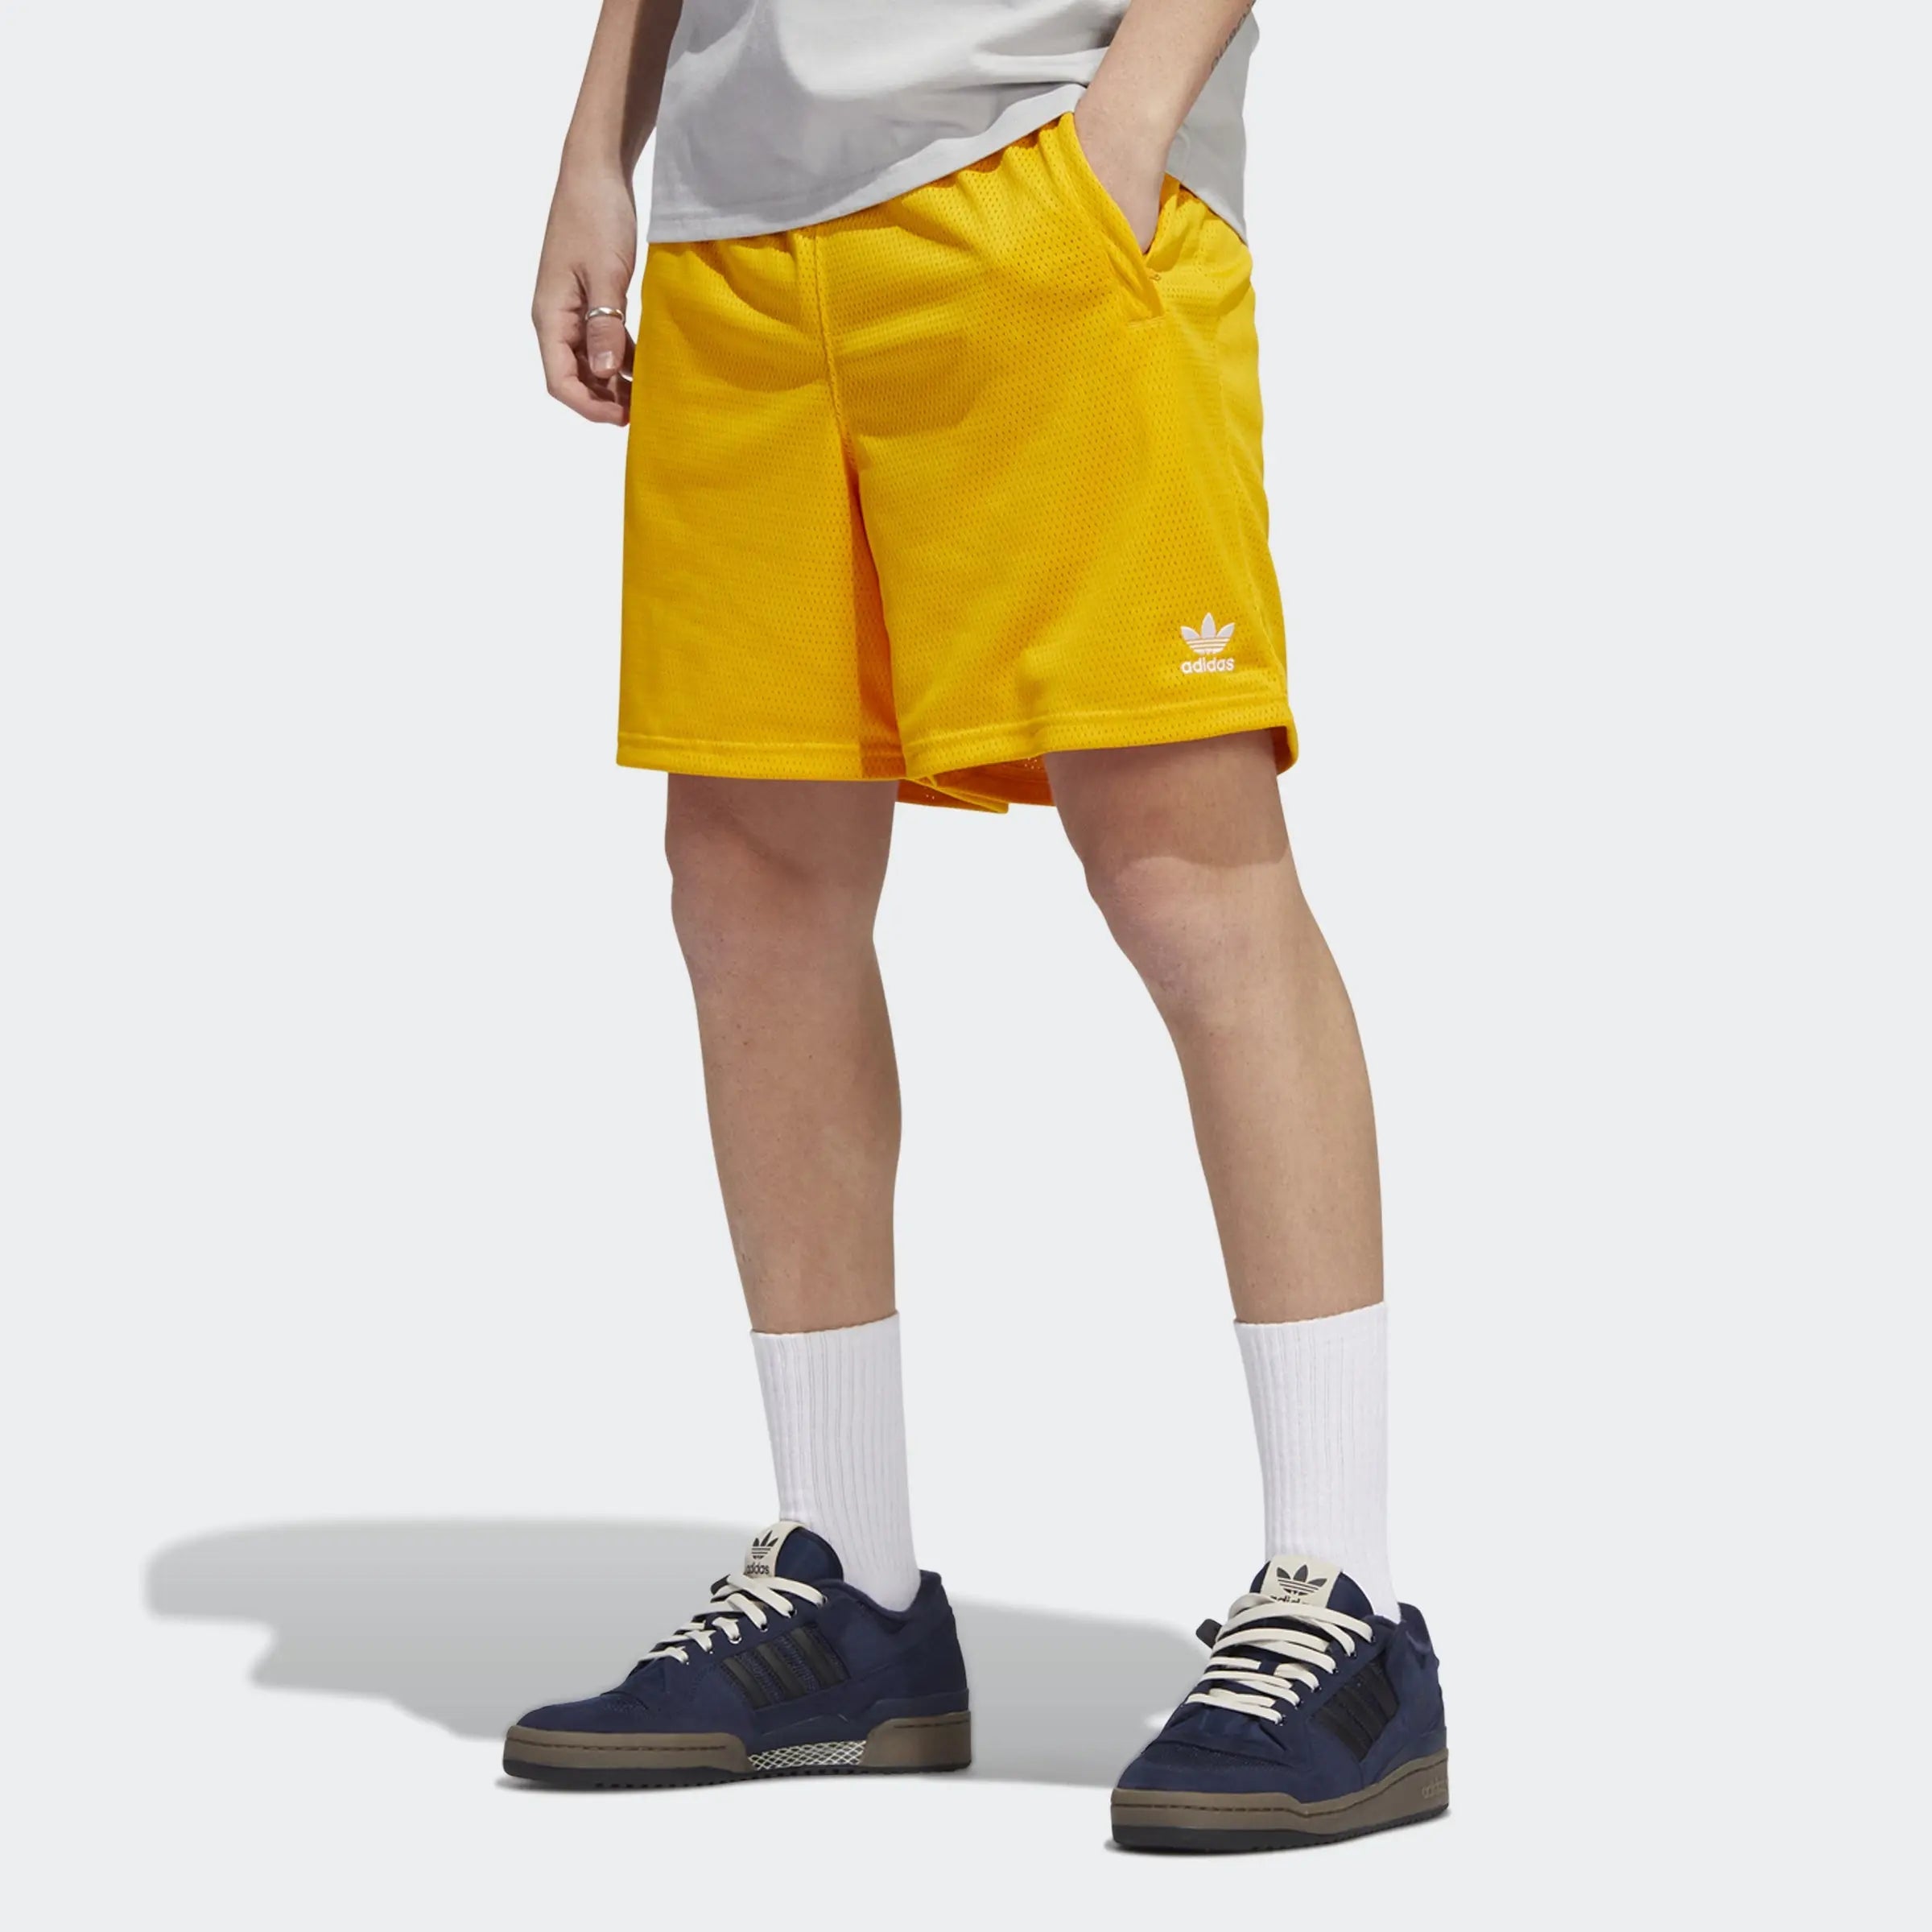 Adidas Essentials Mesh Short Gold - Reds Puffer